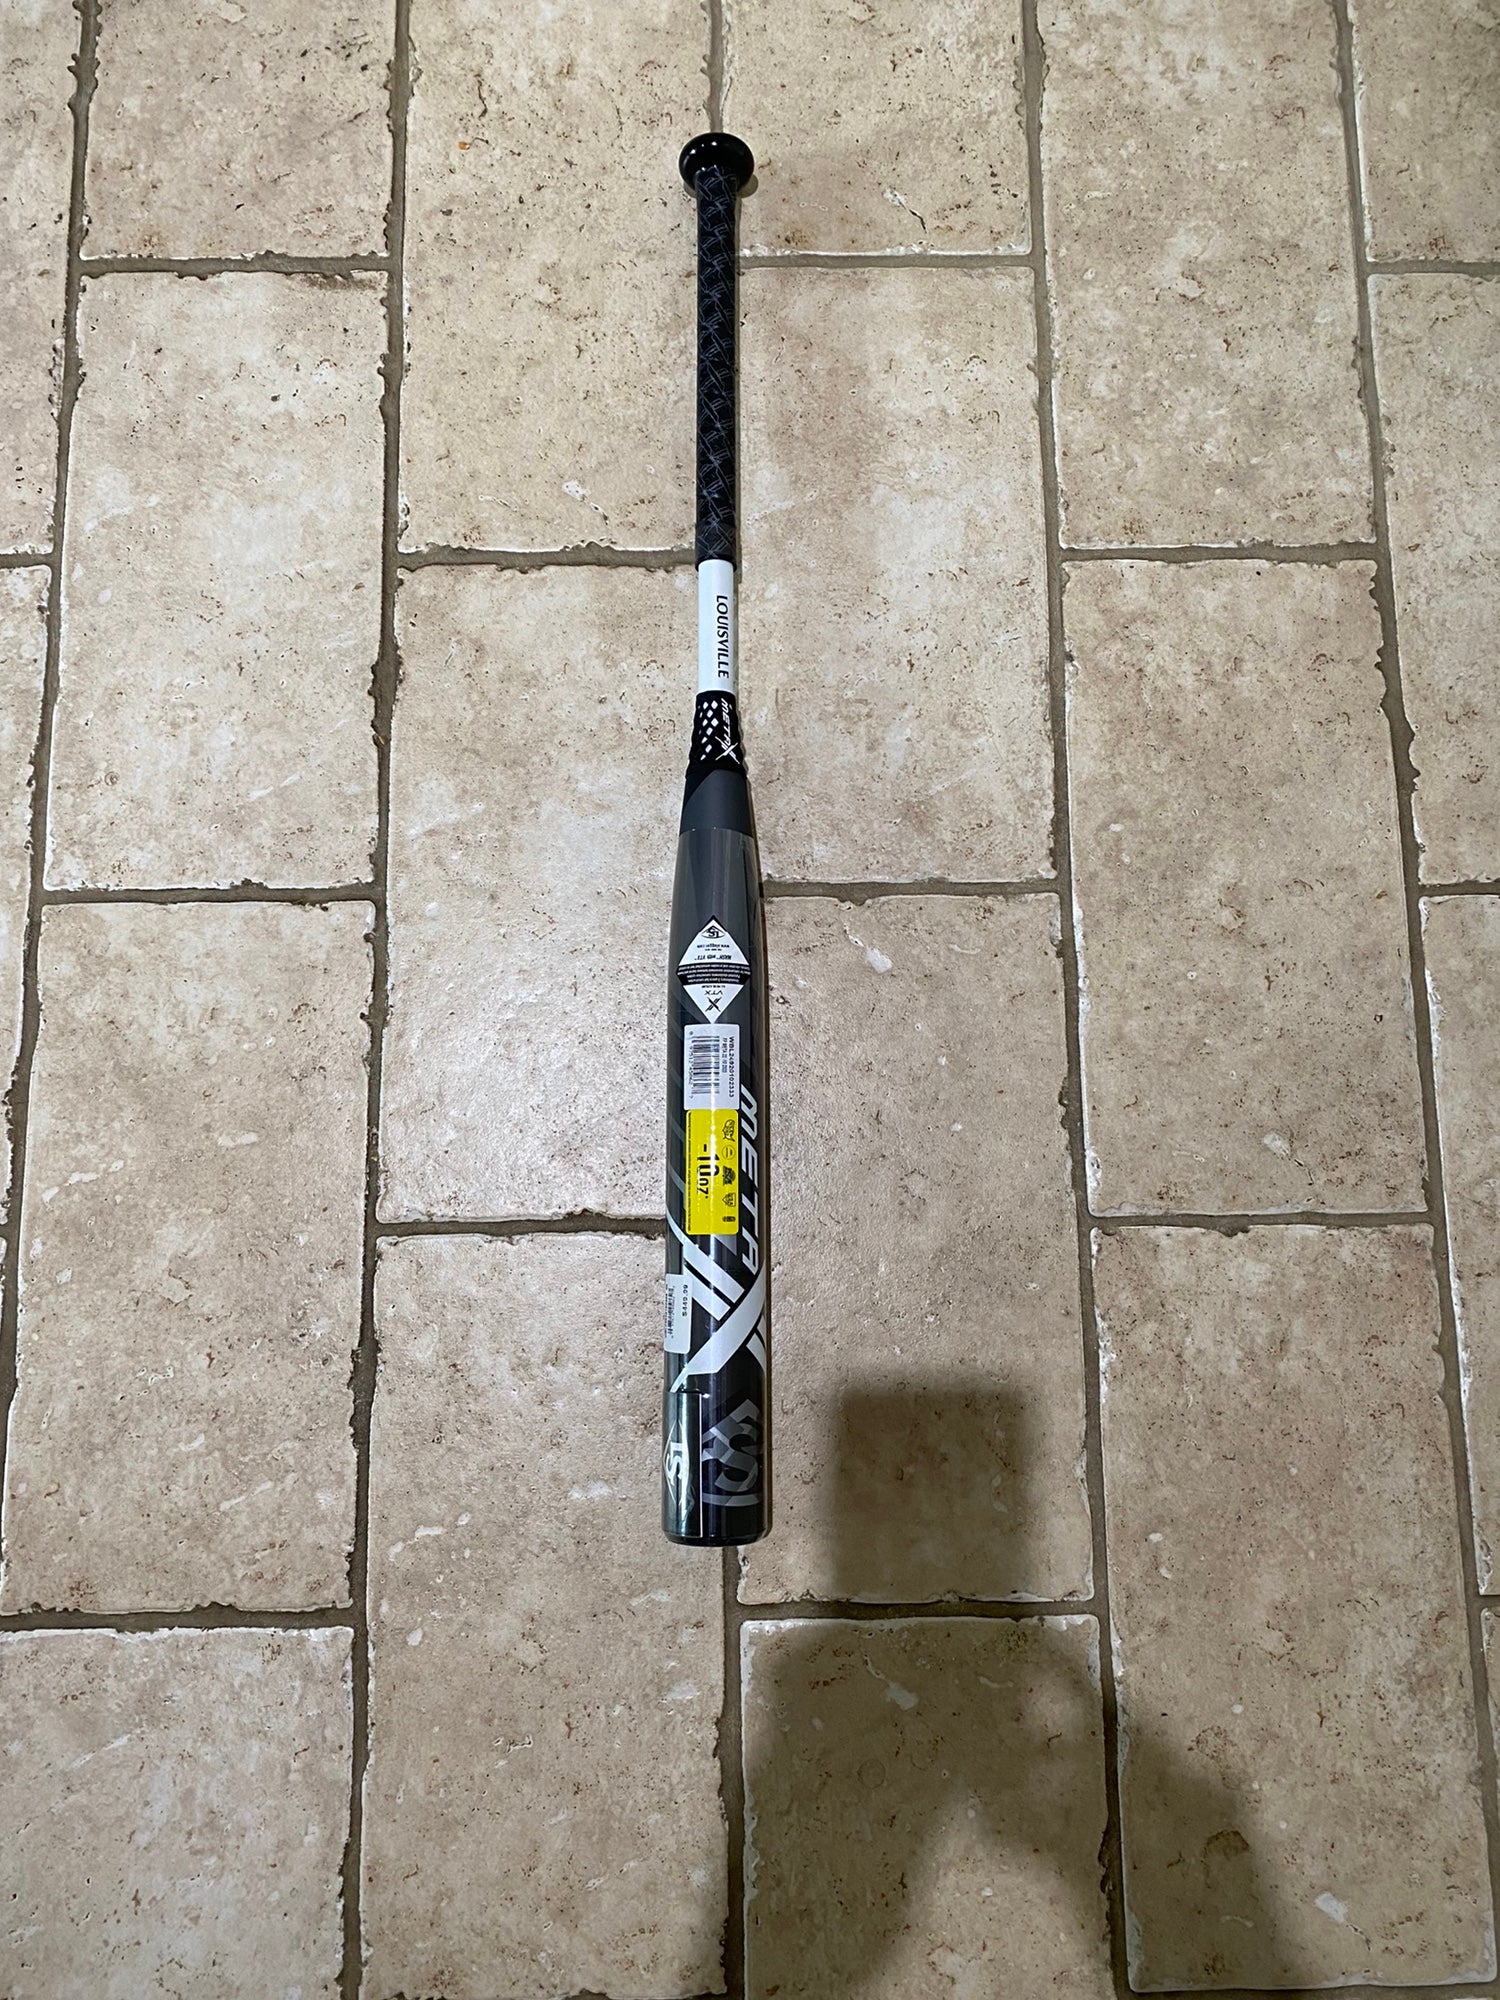 Meet the 2022 Louisville Slugger LXT Fastpitch bat